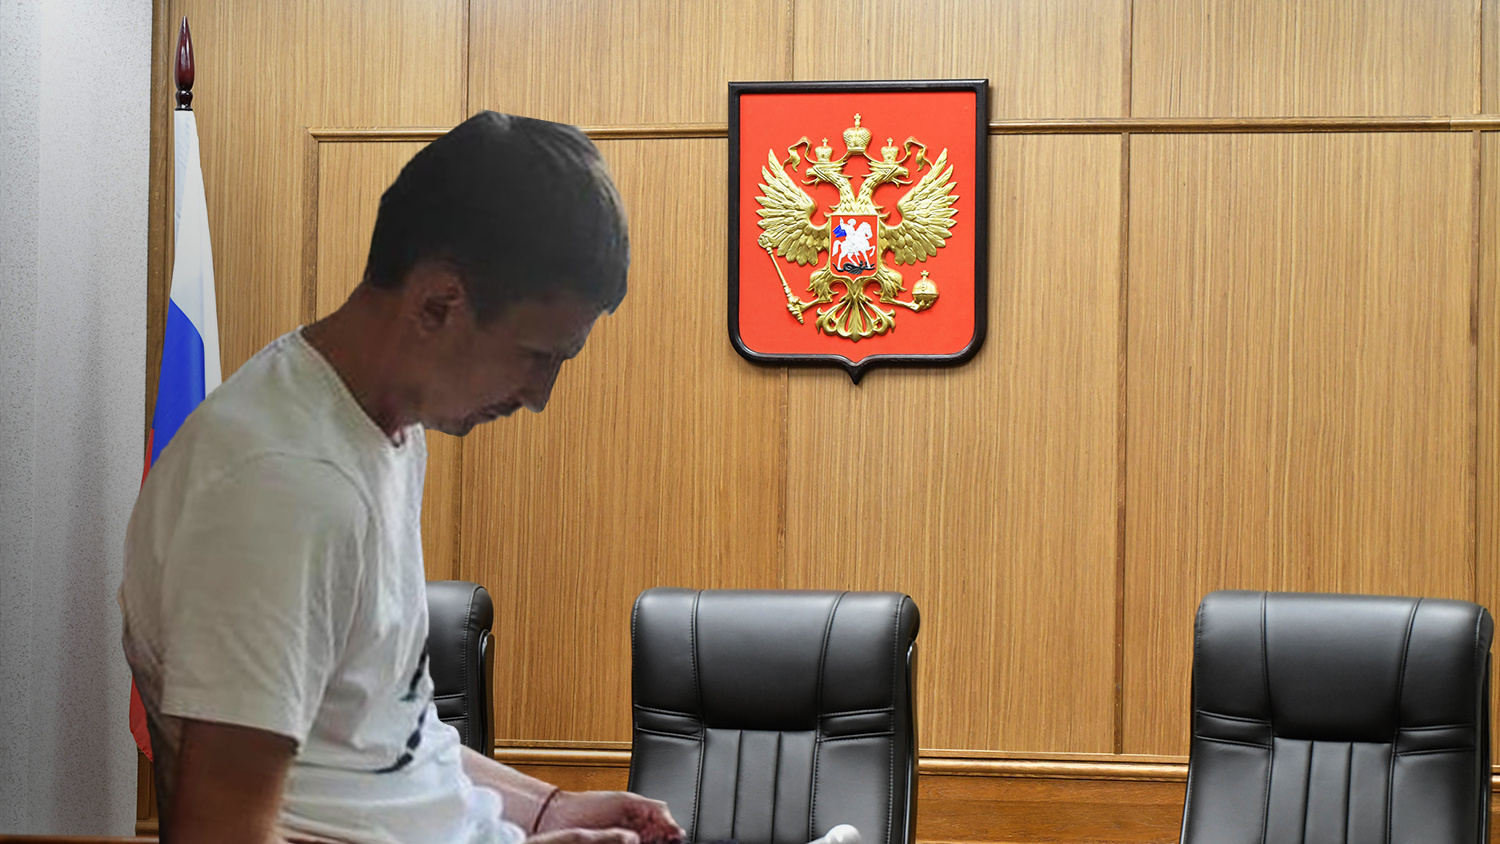 Екатеринбургский бизнесмен оставил клиентов без миллионов, сославшись на ковид. Что решил суд?